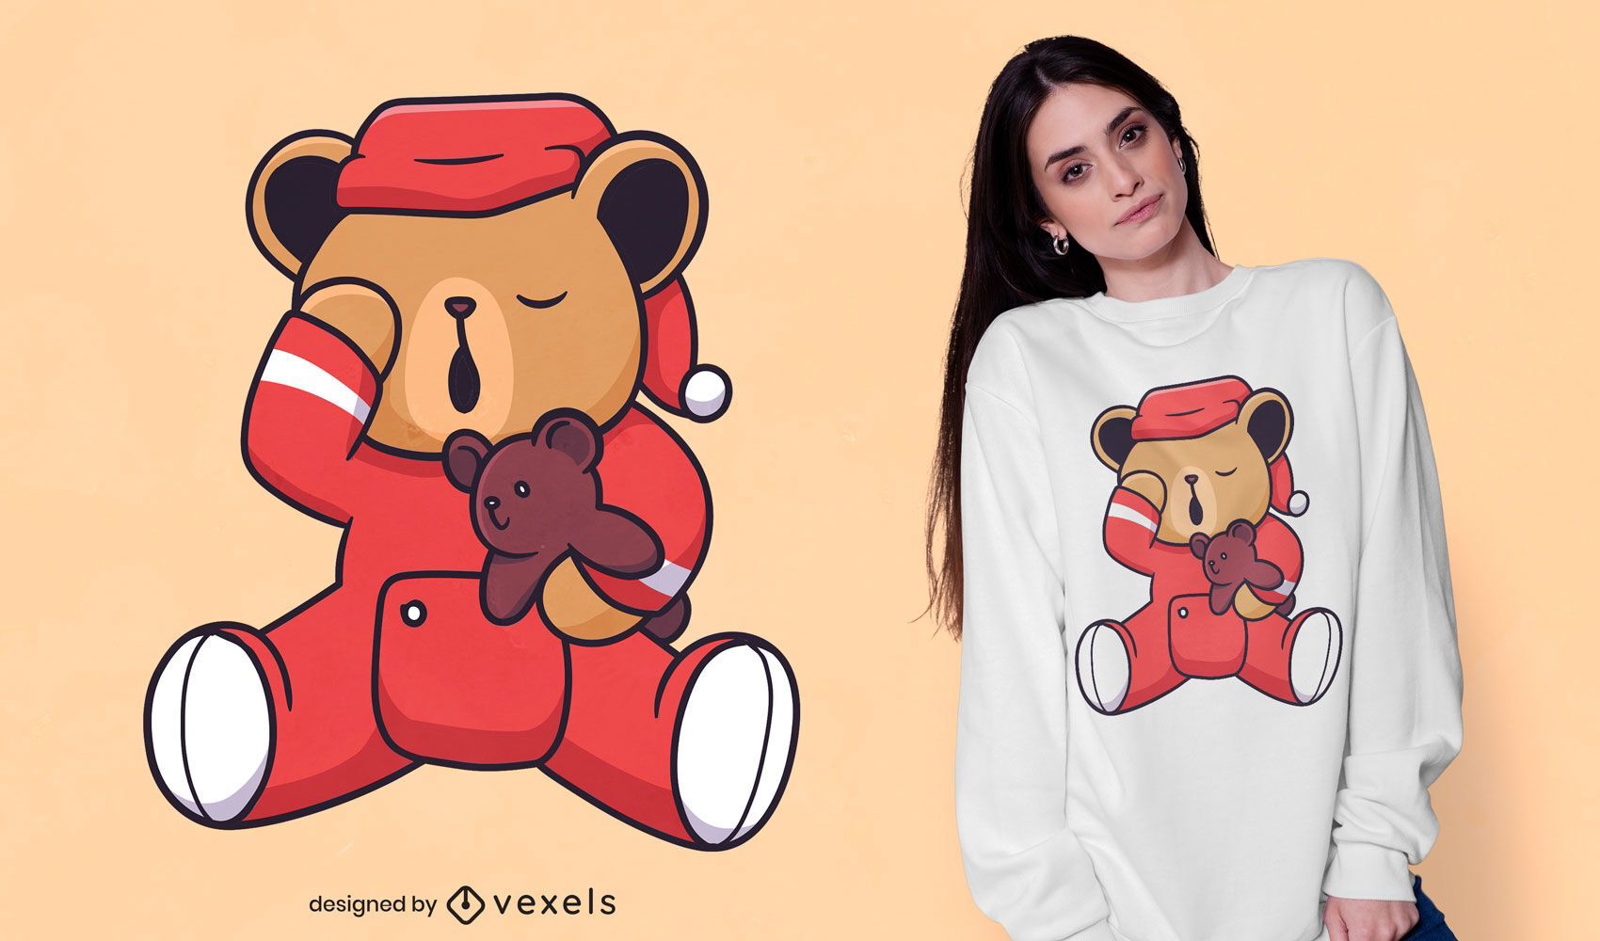 Sleepy bear teddy bear t-shirt design